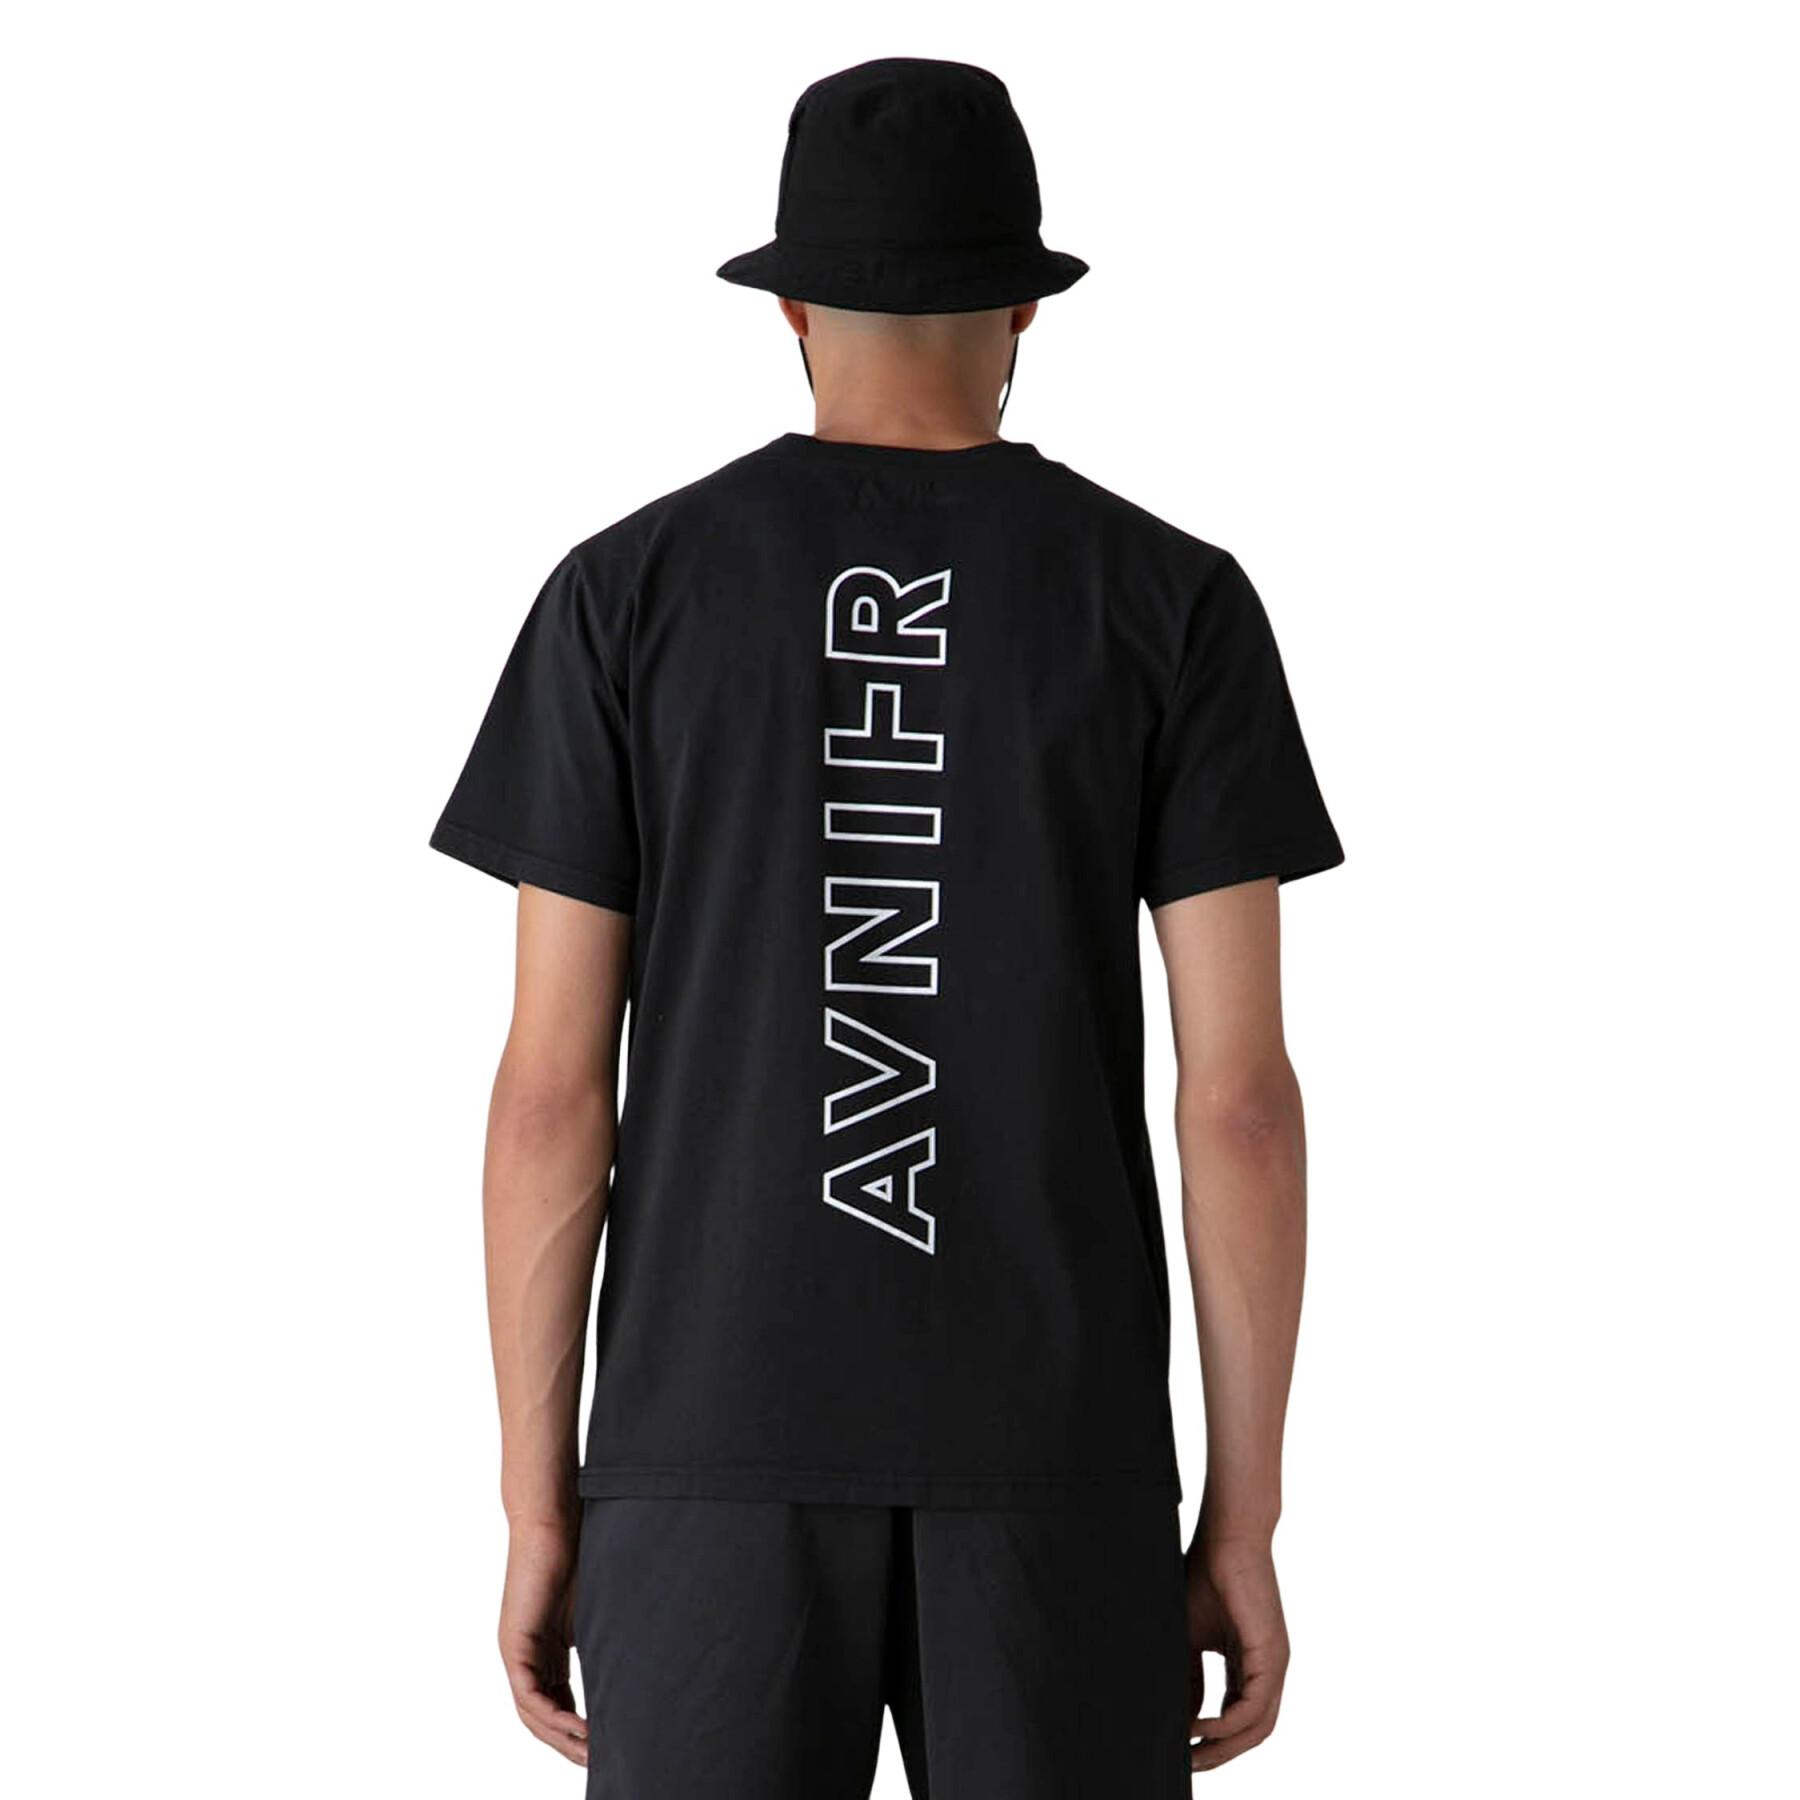 T-shirt Avnier Source Vertical